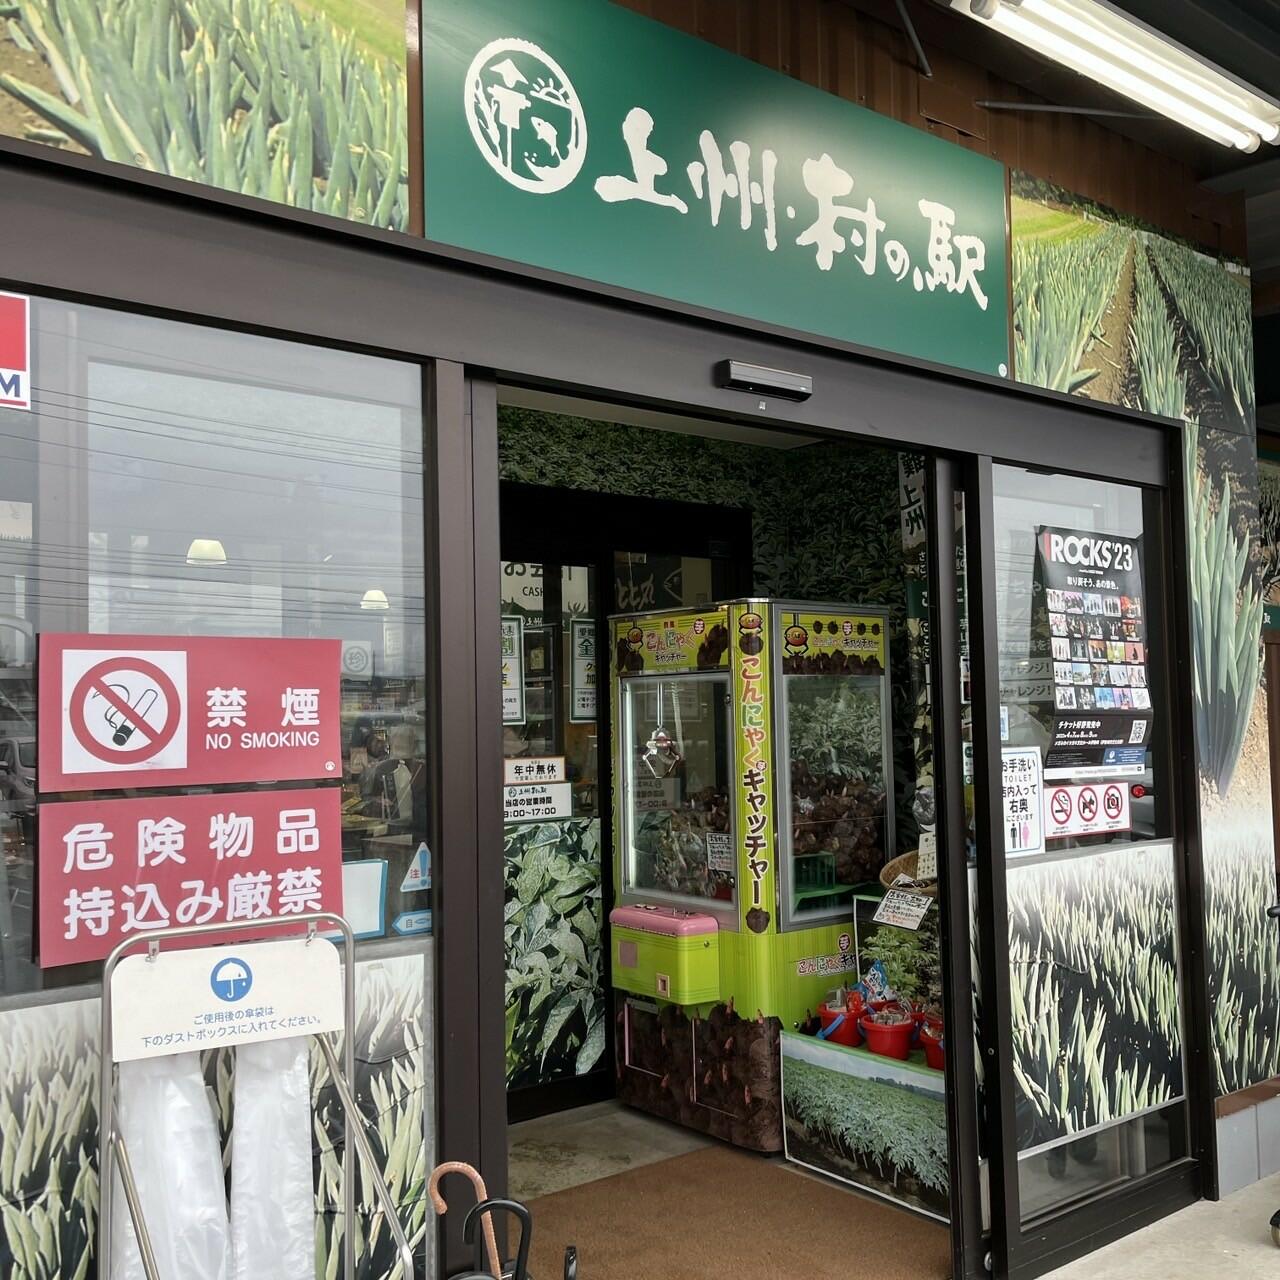 上州村の駅 - 渋川市白井/食料品店 | Yahoo!マップ